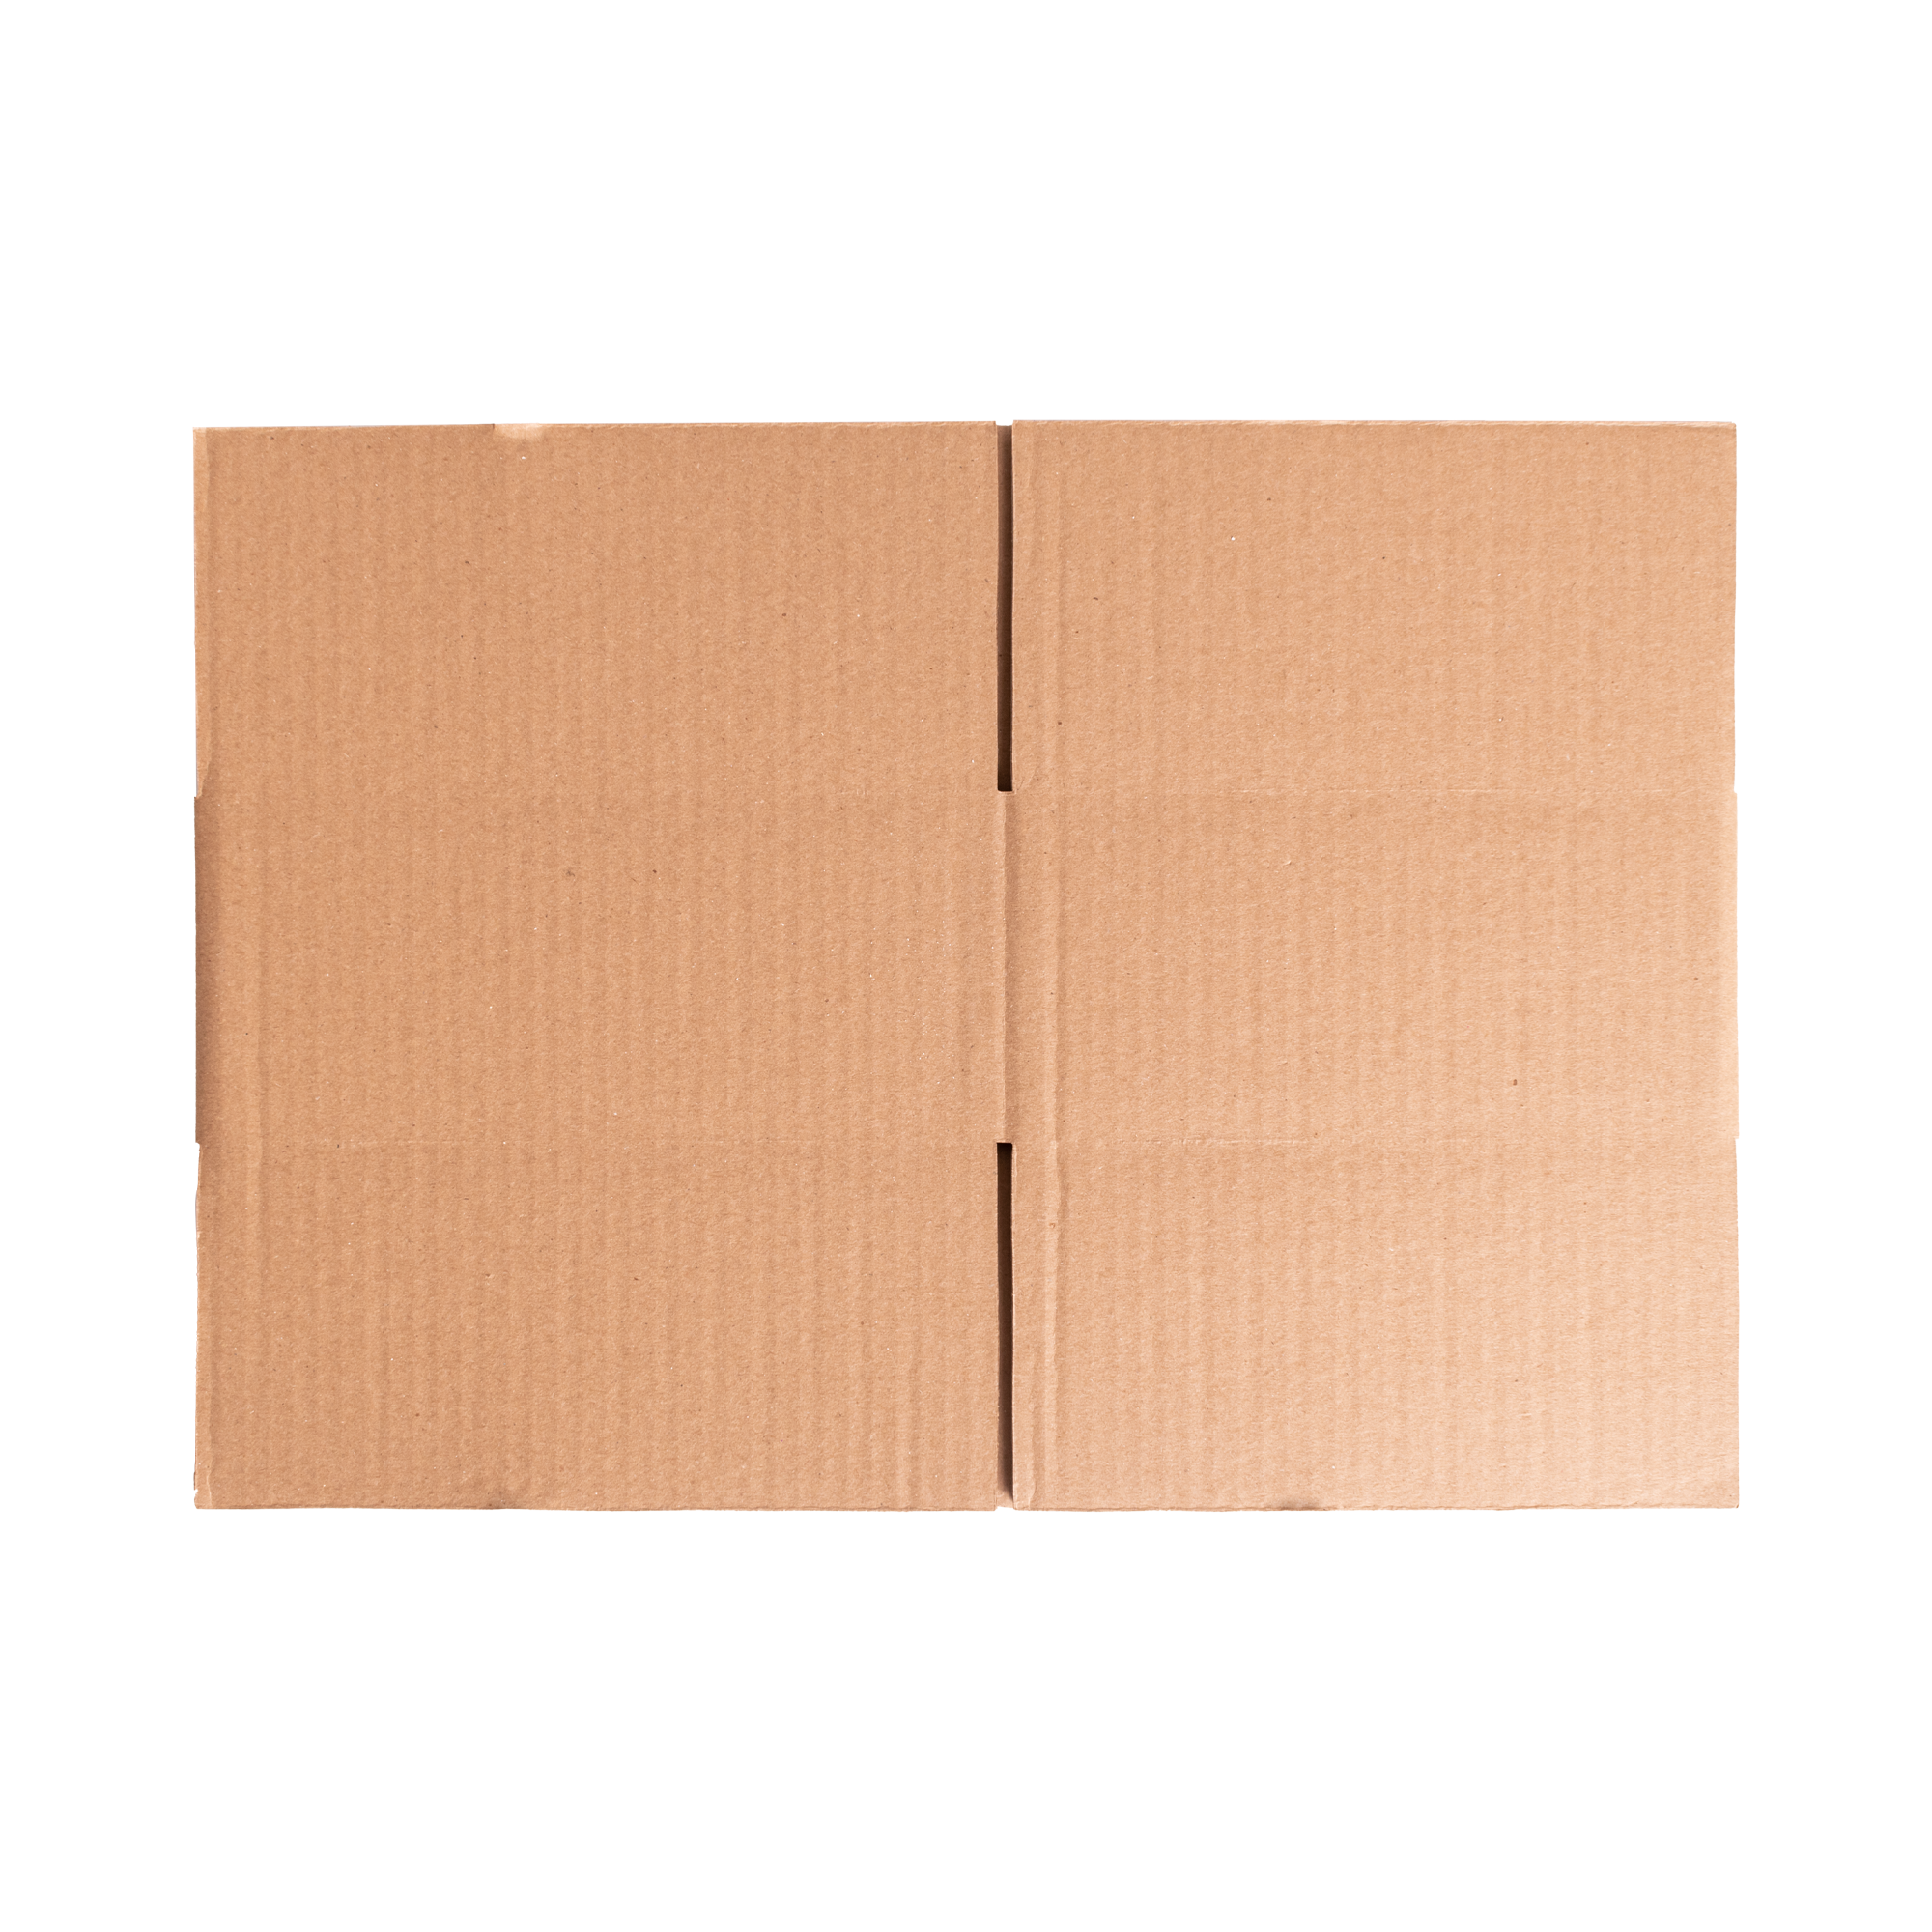 60pzs Cajas Cartón Pequeñas 16x12x12cm Para Envíos